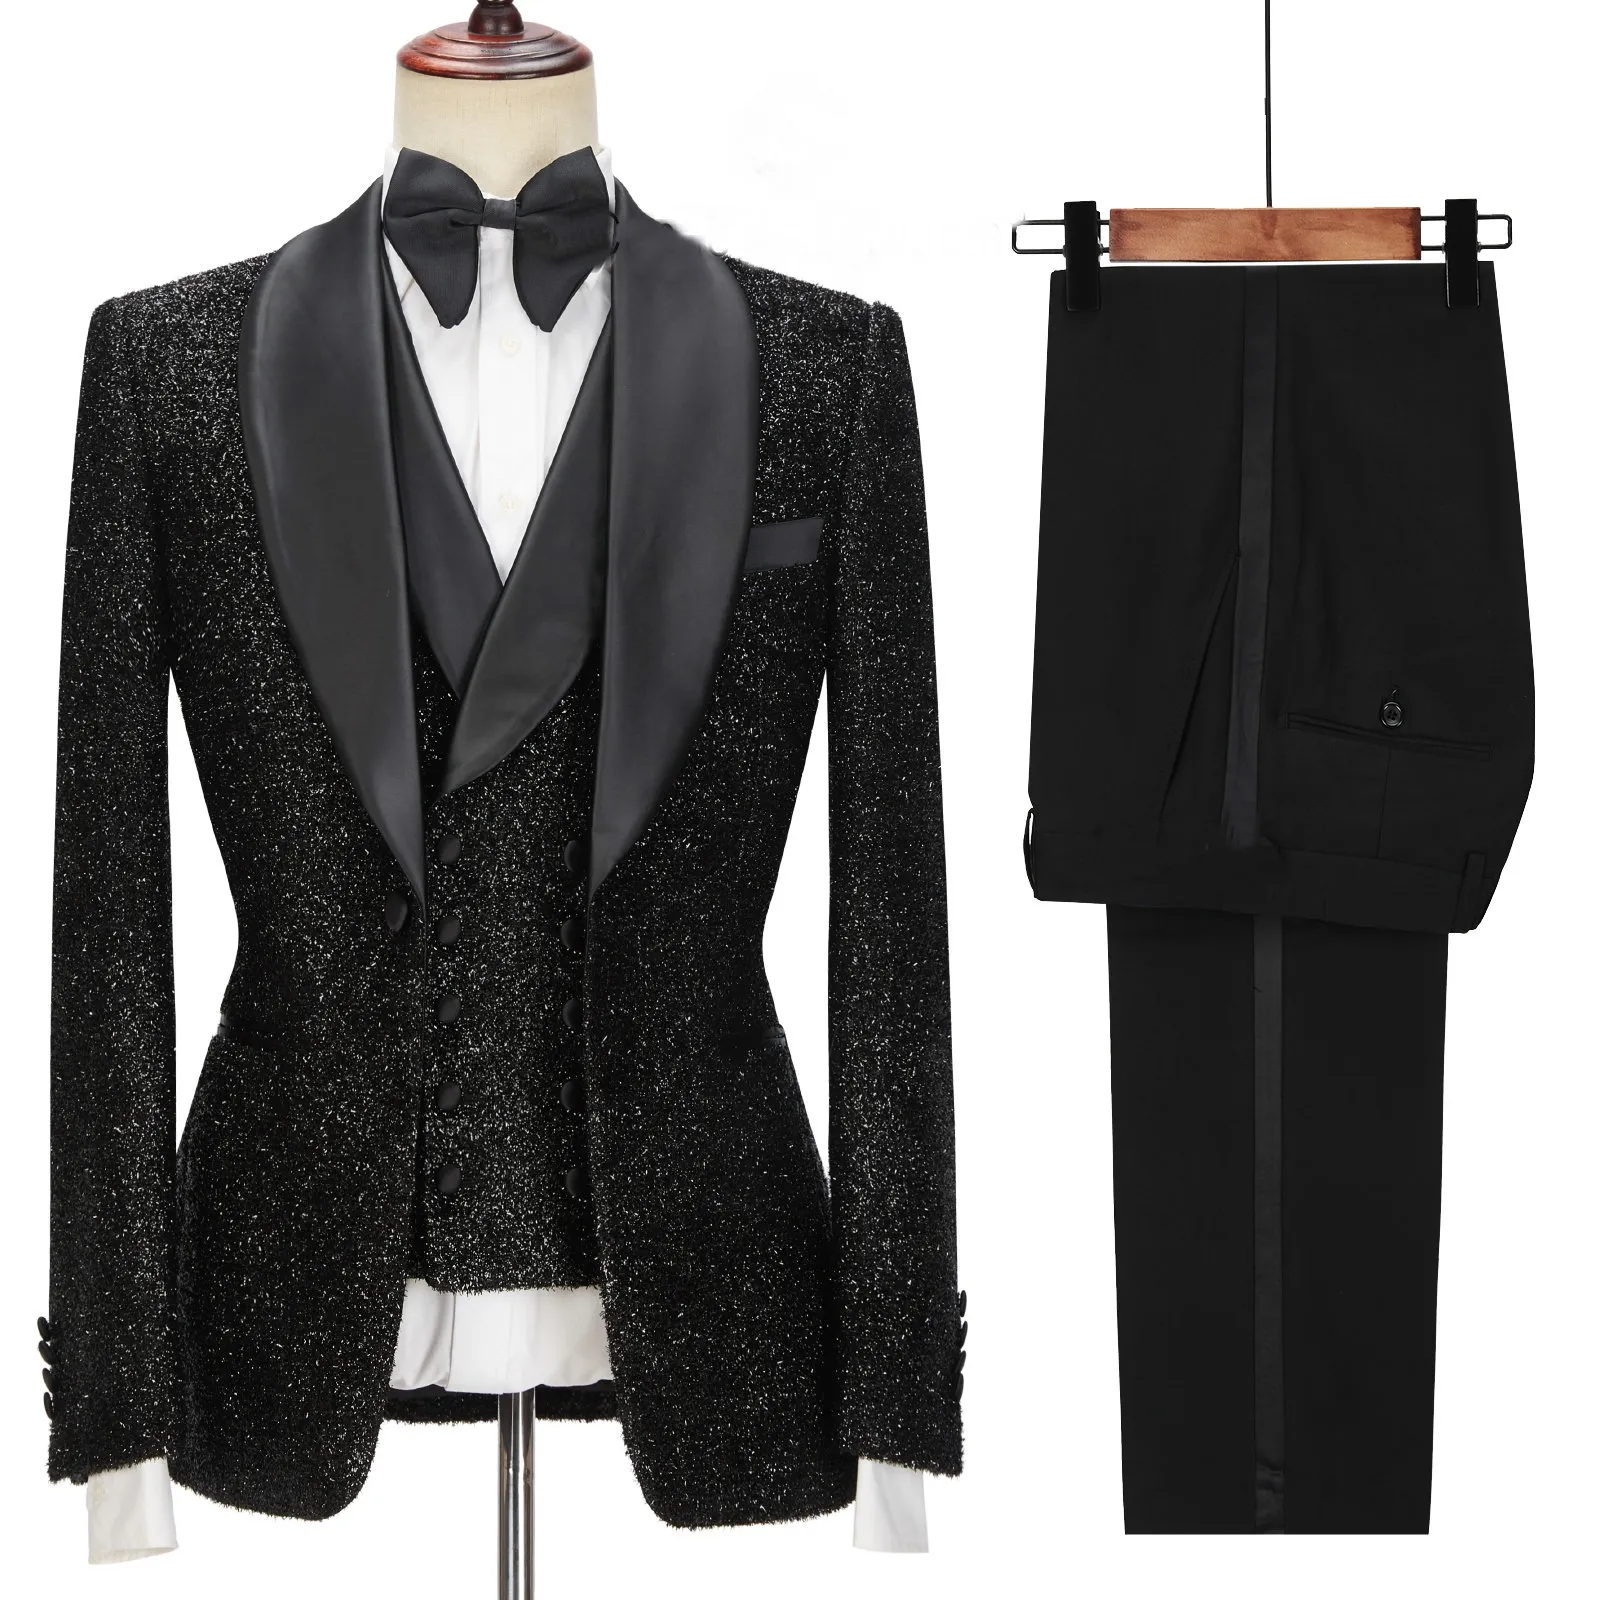 Dernières conceptions de pantalons de manteau mode noir brillant hommes costumes pour mariage marié Tuxedos Slim Fit Terno Masculino Prom Party 3 pièces